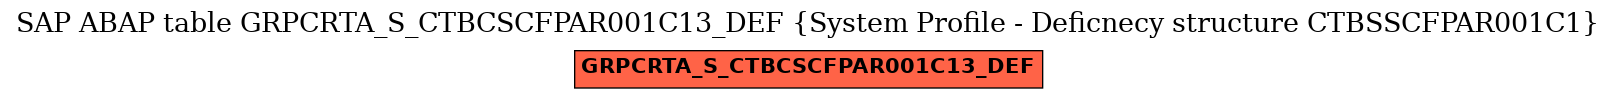 E-R Diagram for table GRPCRTA_S_CTBCSCFPAR001C13_DEF (System Profile - Deficnecy structure CTBSSCFPAR001C1)